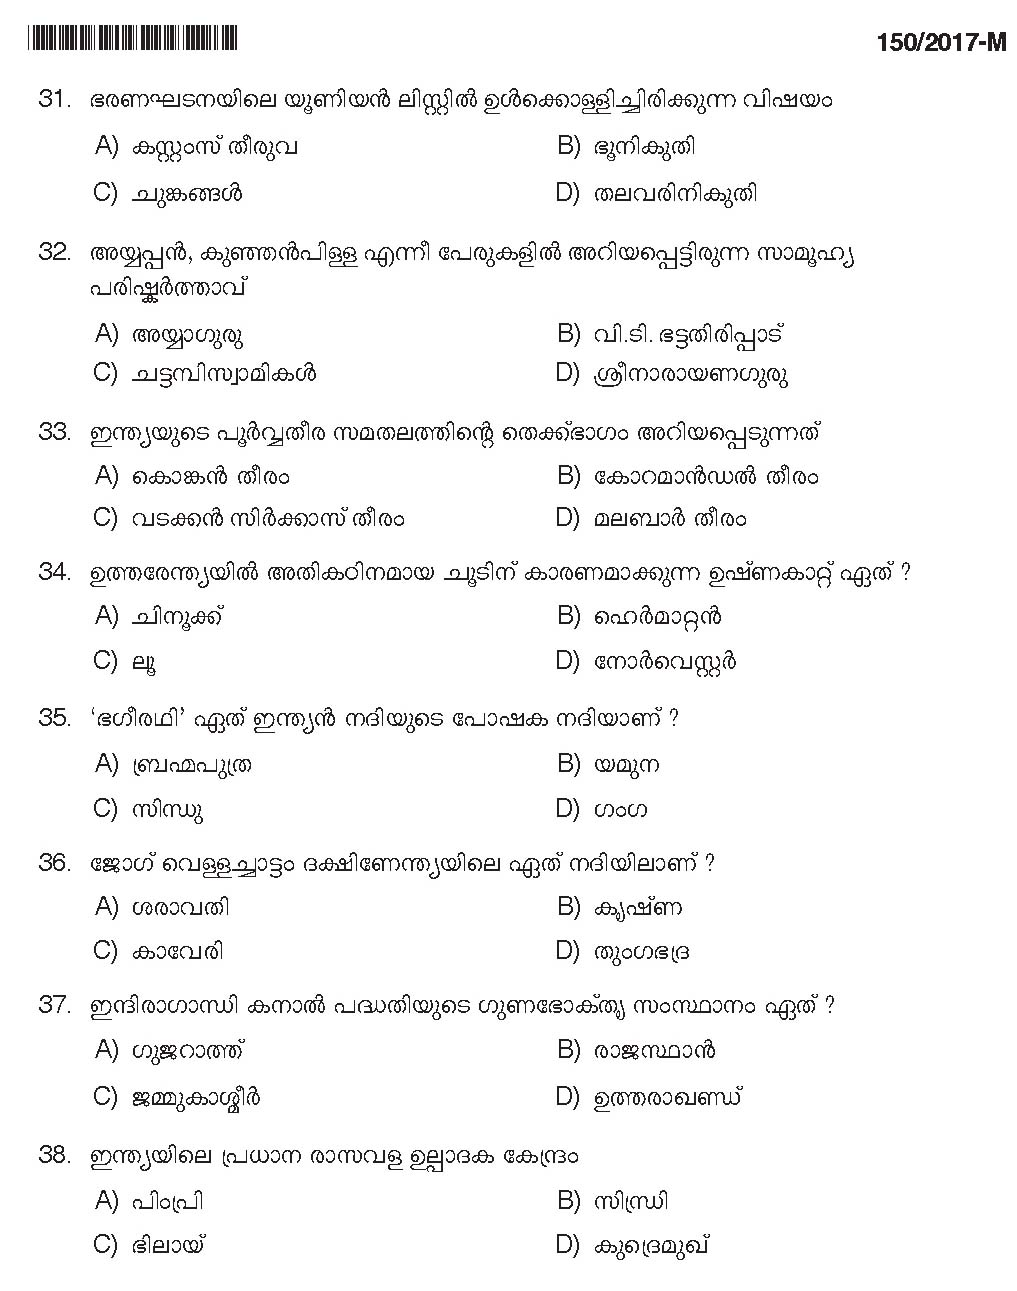 Kerala PSC Boat Deckman Exam Question Code 1502017 M 6